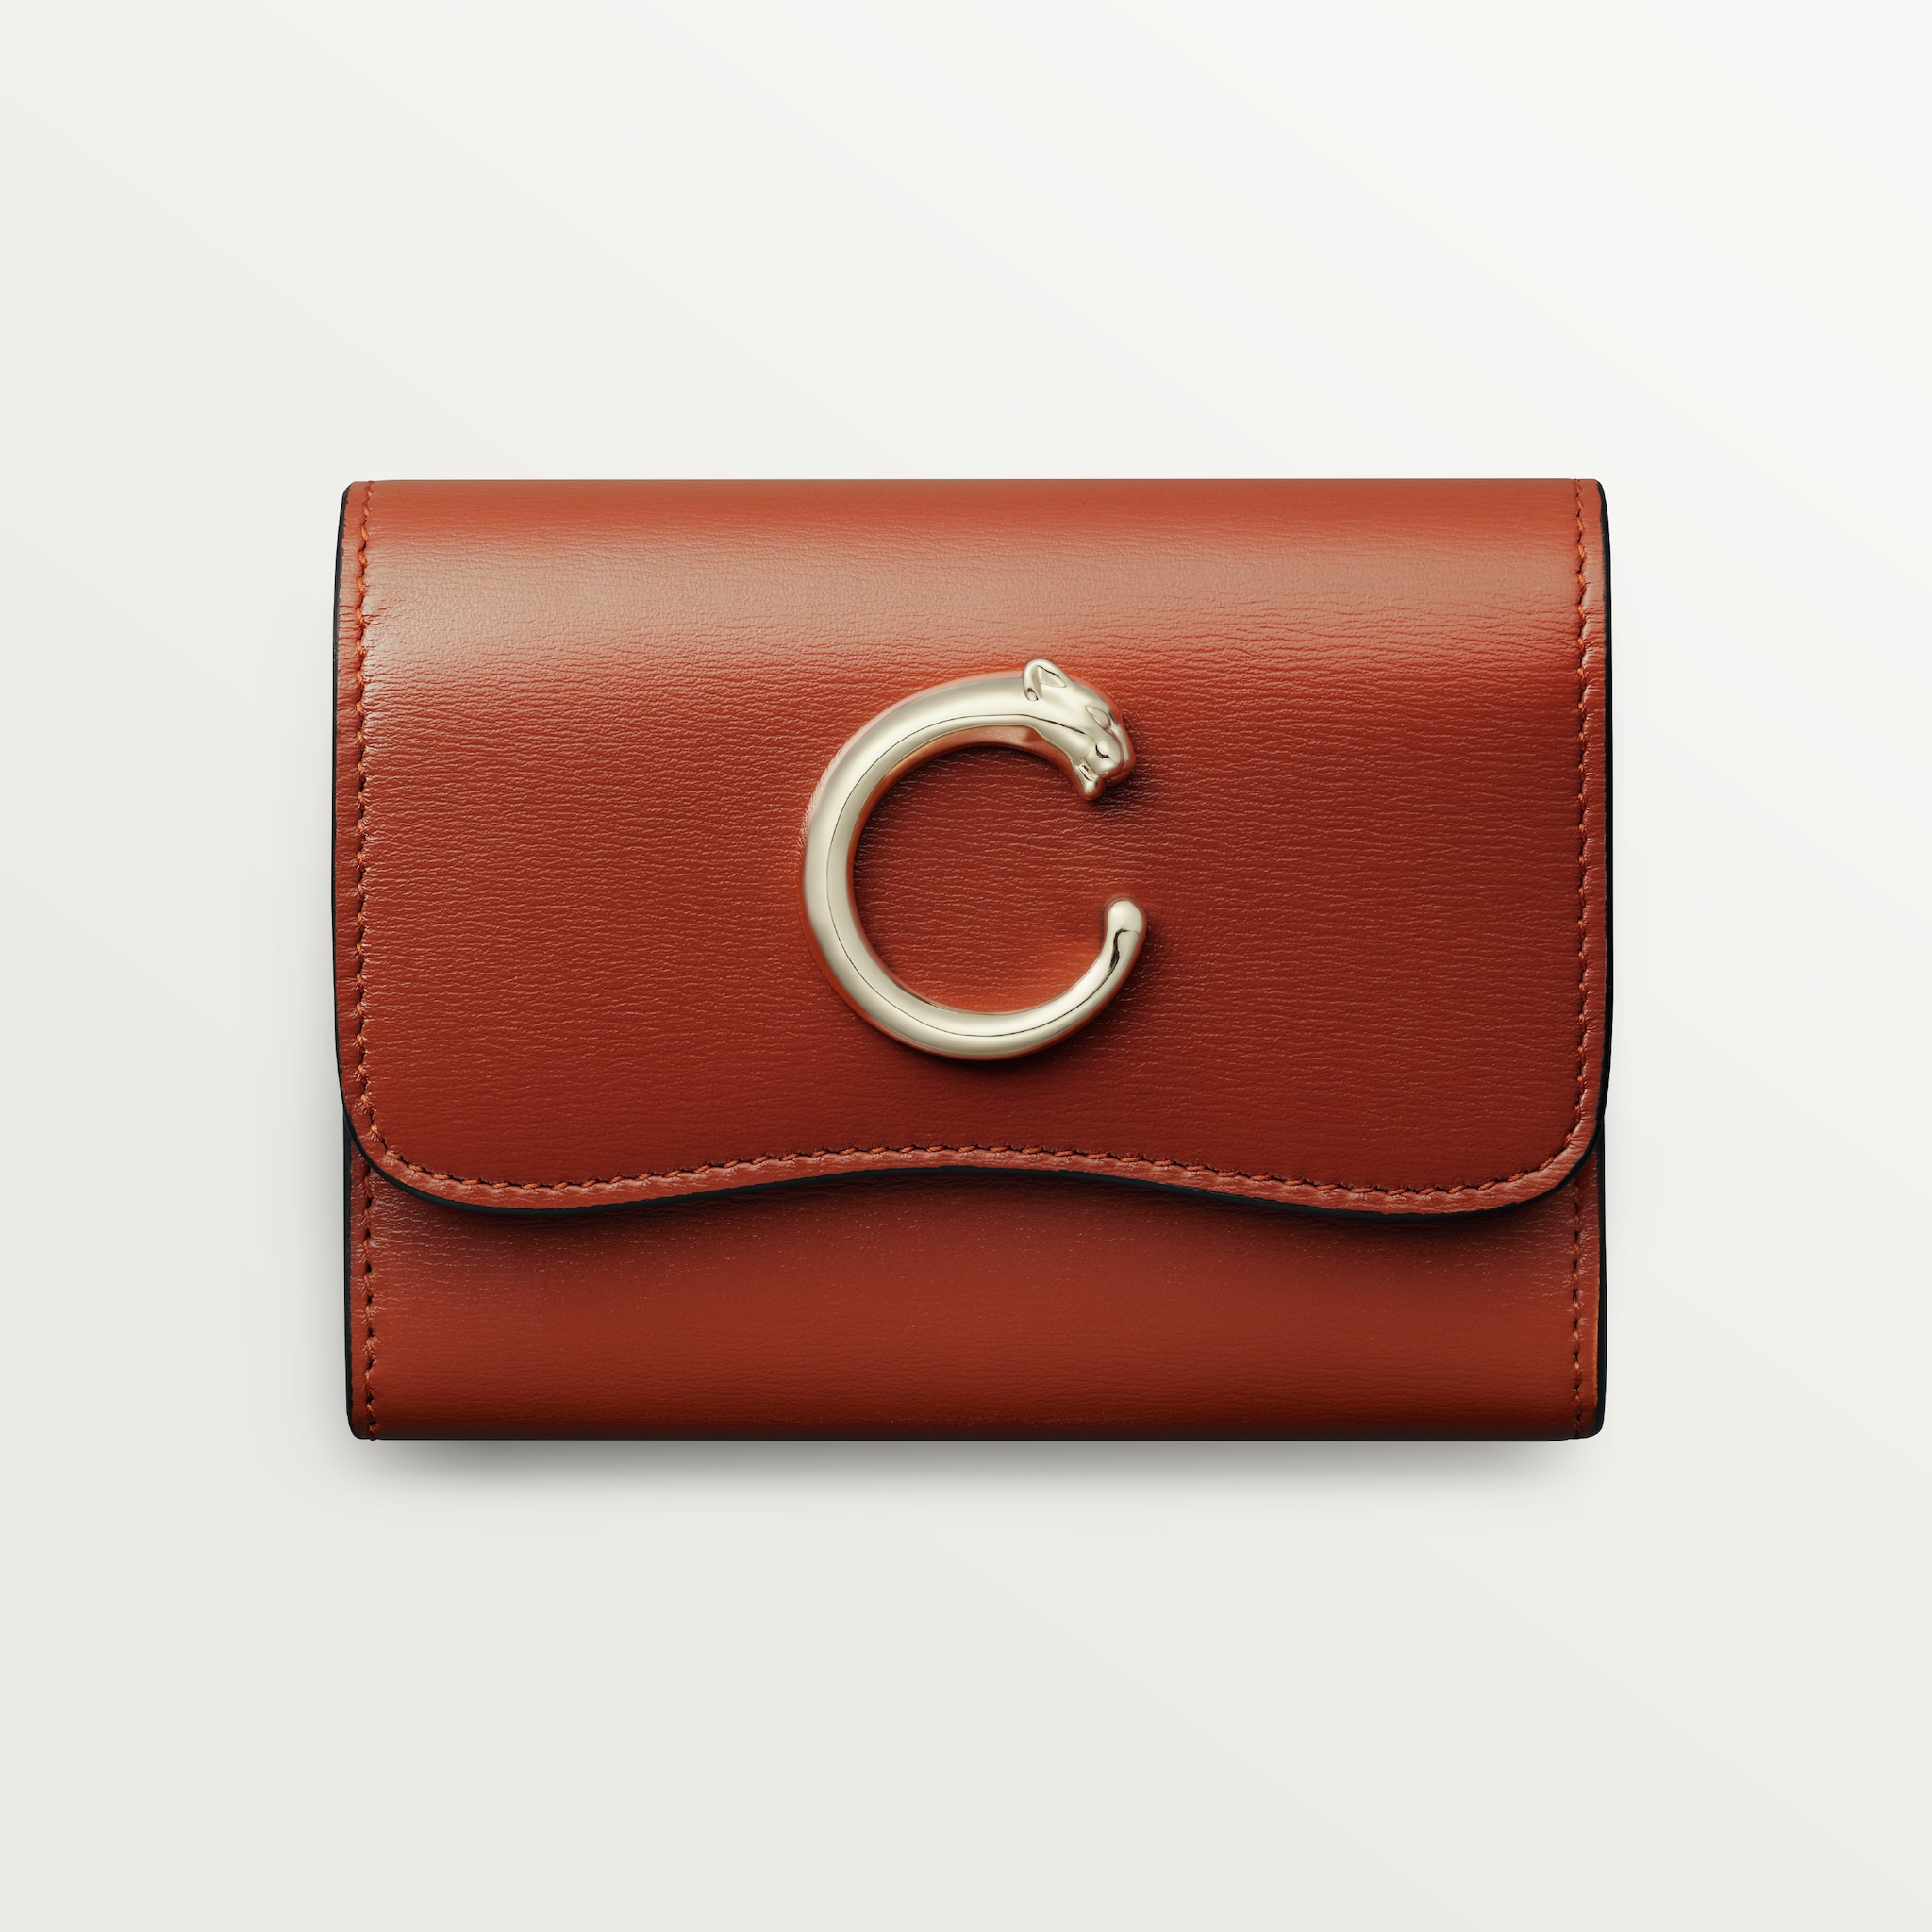 Panthère de Cartier Small Leather Goods, compact walletChestnut calfskin, golden finish